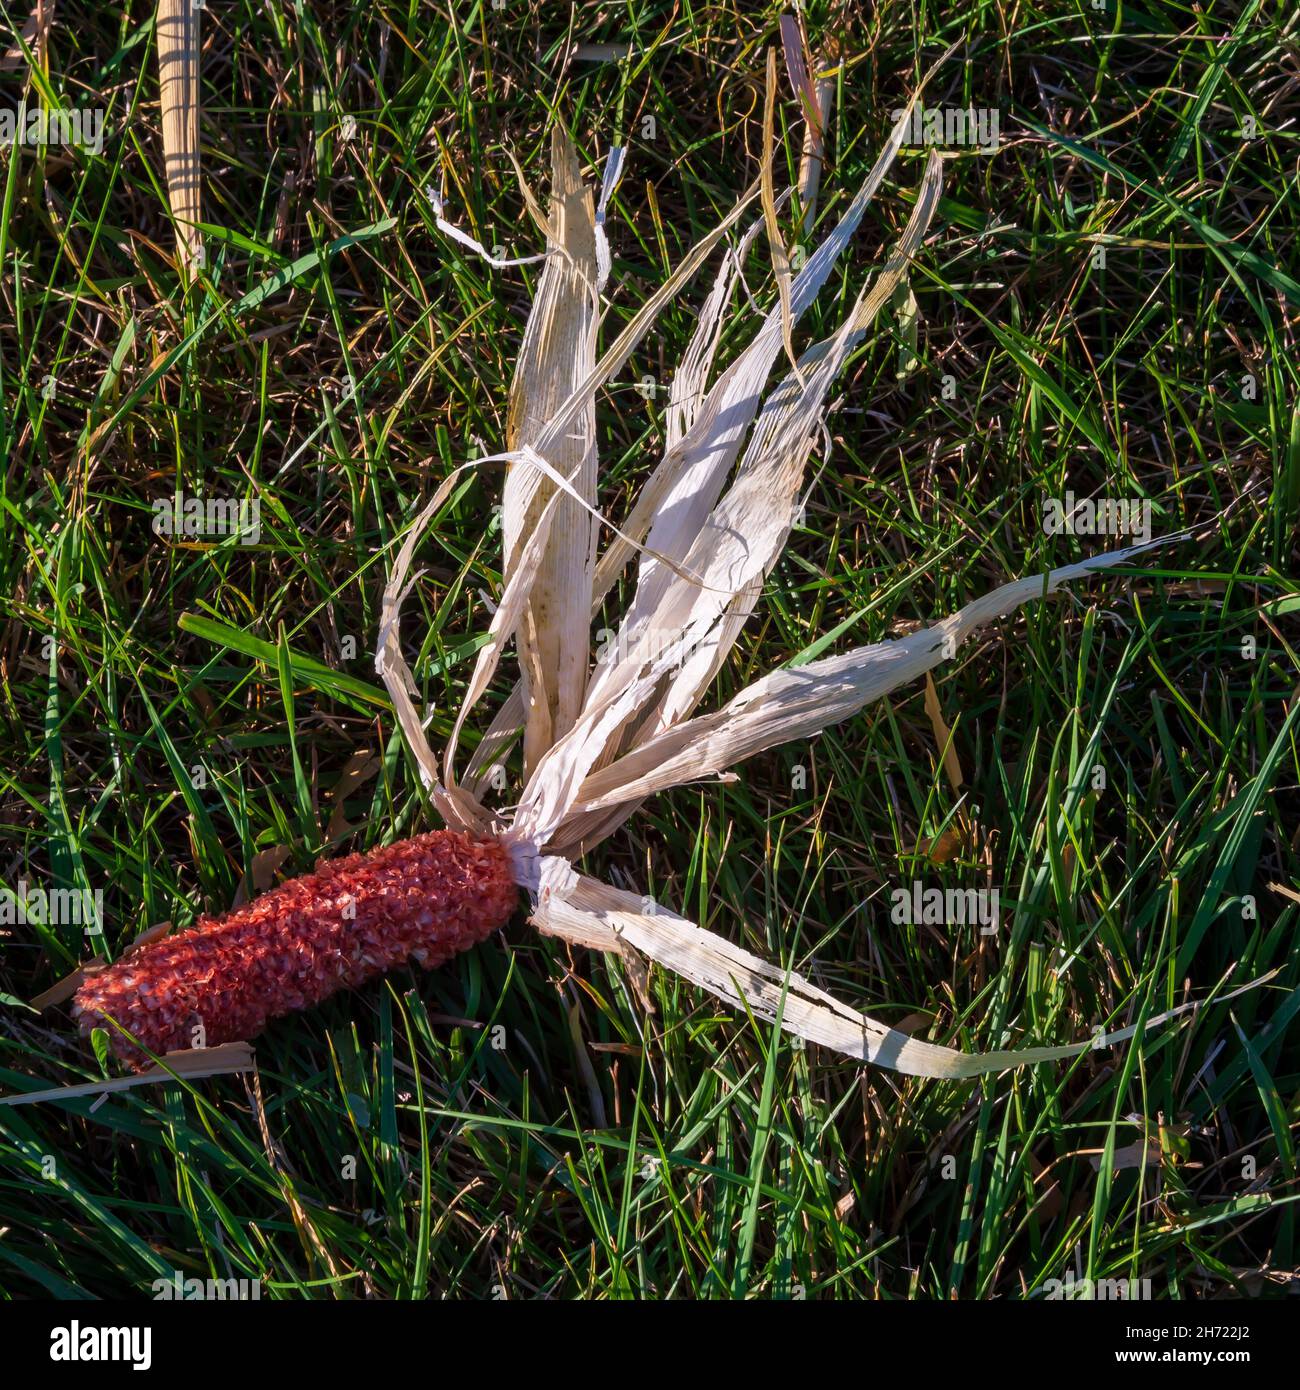 Ein Maiskolben, der von einem Mähdrescher ausgezogen wird, liegt im Gras neben einem geernteten Maisfeld. Stockfoto